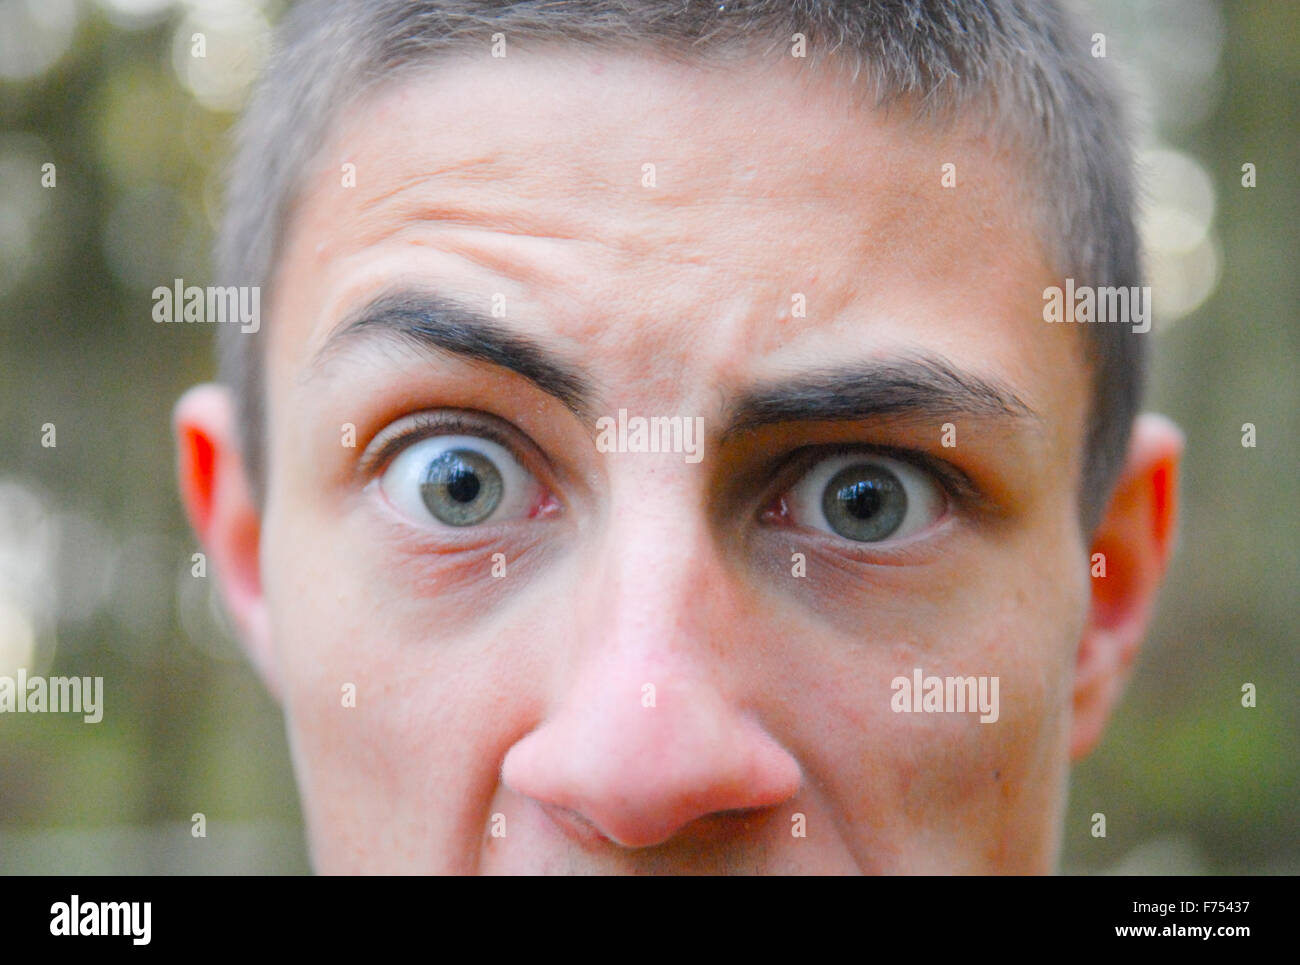 Ragazzo adolescente con occhi chiari in close-up nella foresta. Foto Stock